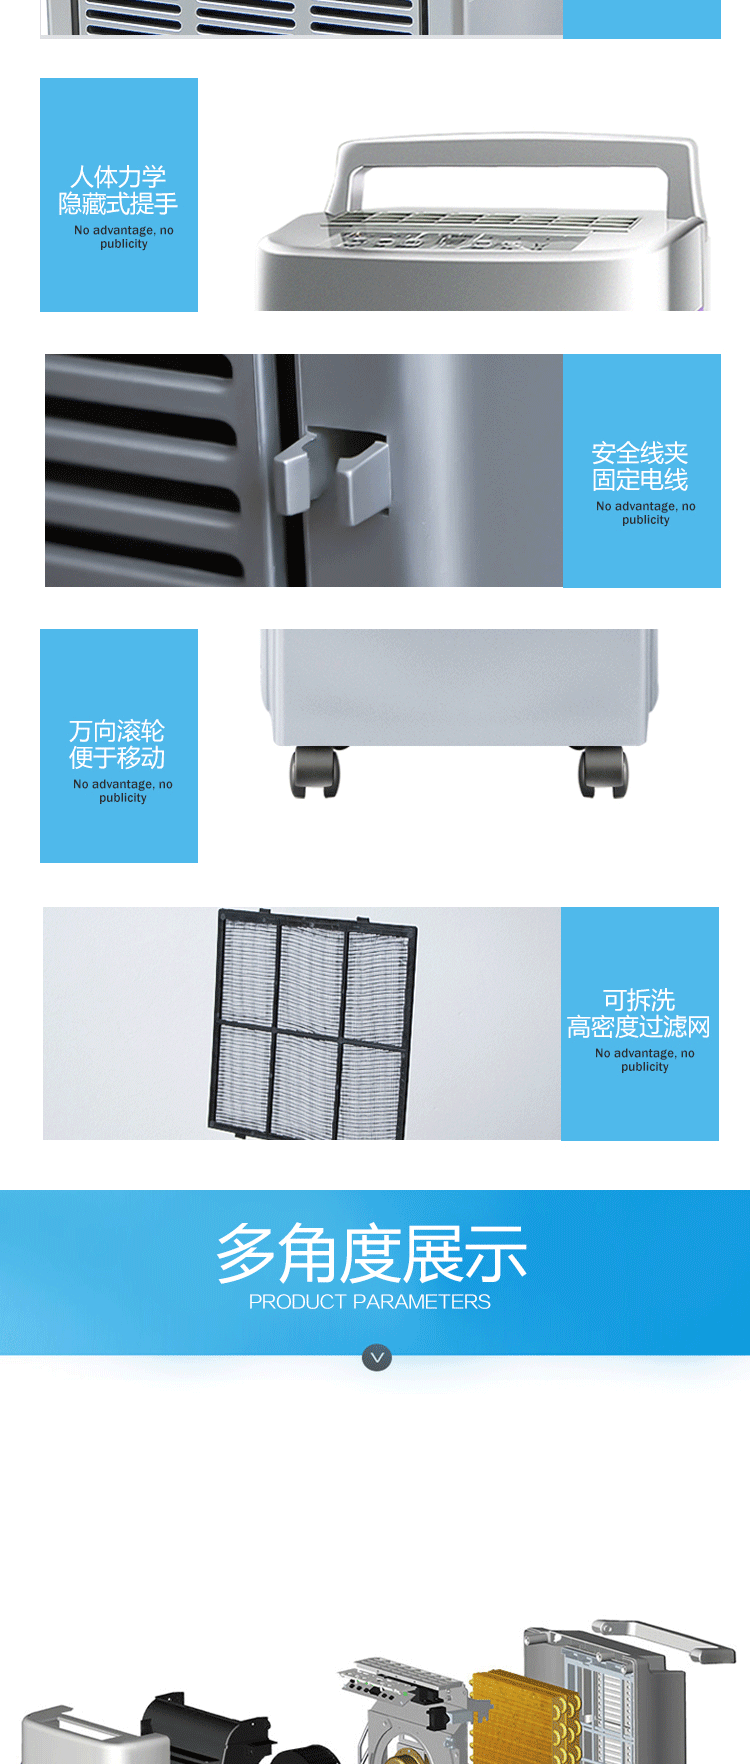 郑州川泰家用除湿机CT261ED抽湿器除湿器抽湿机厂家用除湿机示例图8